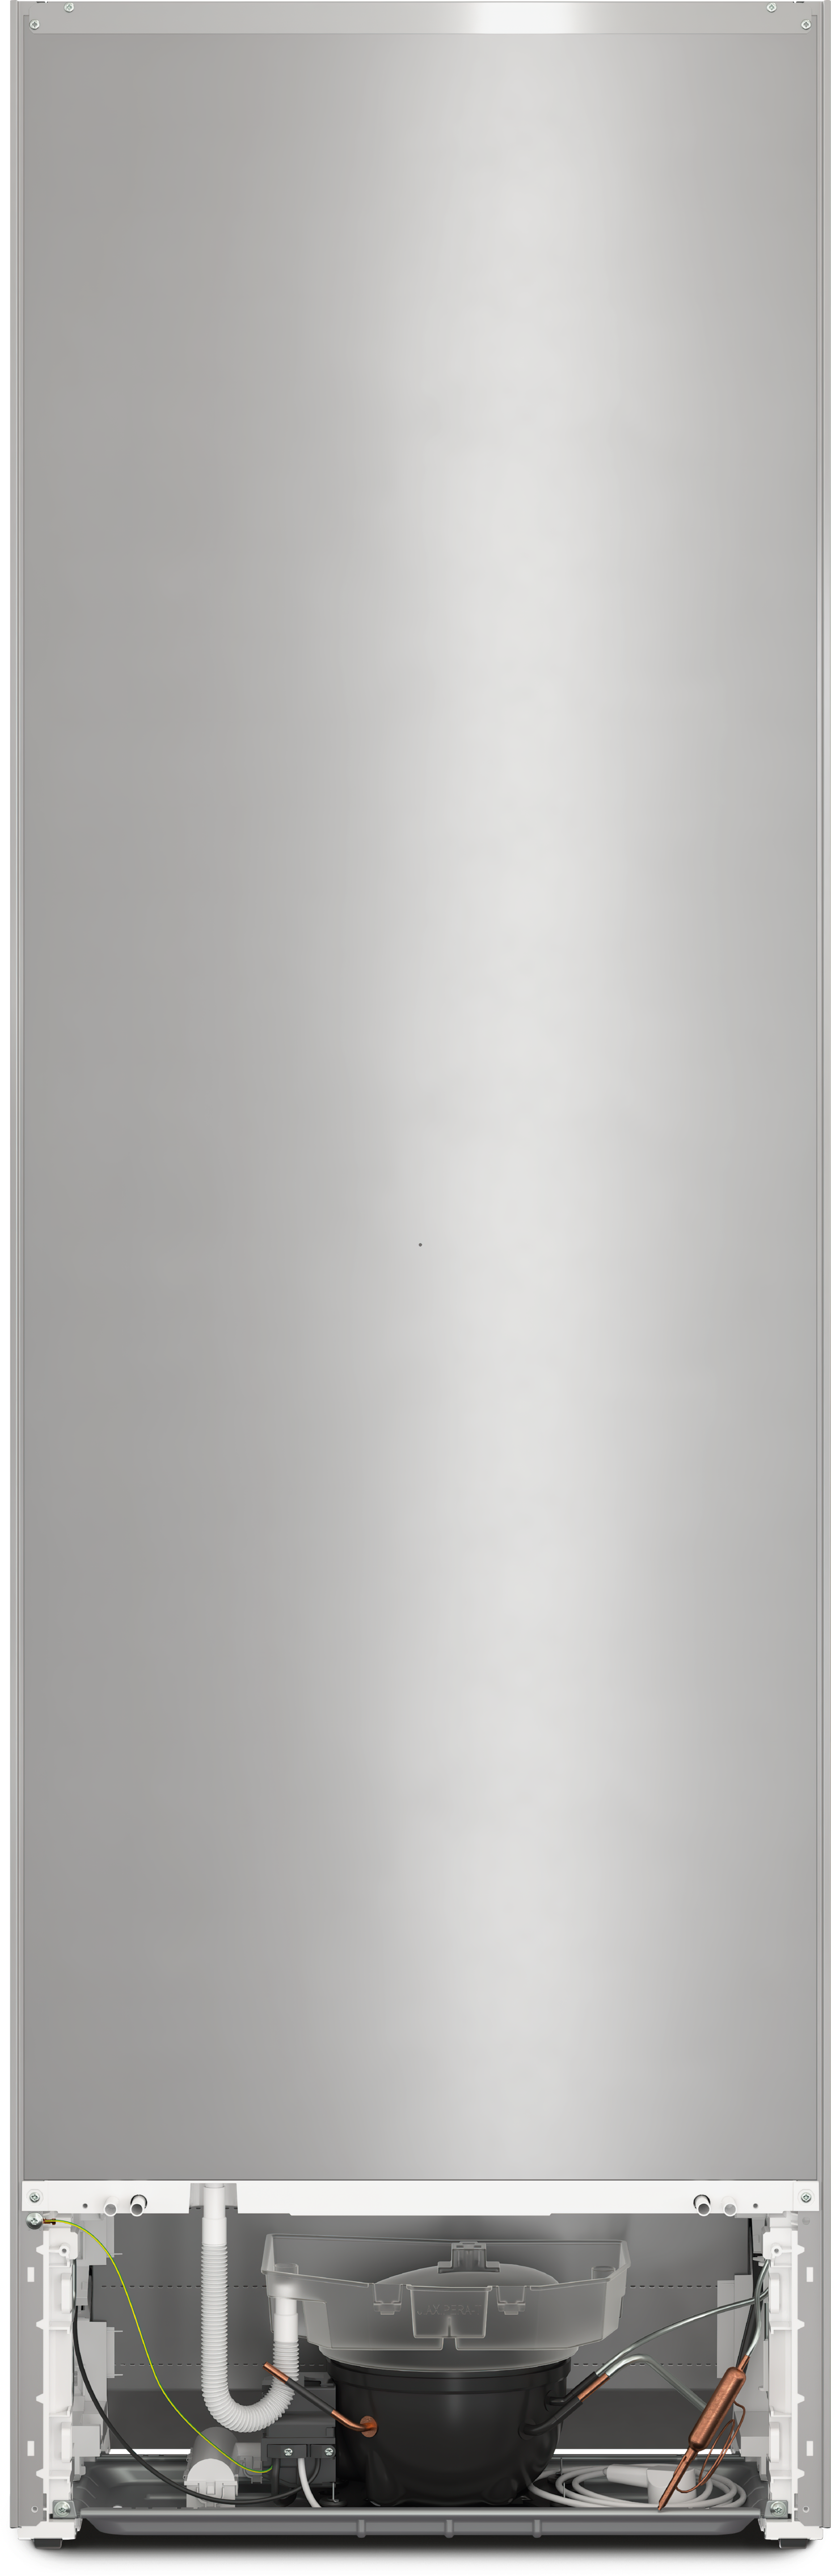 Refrigerare - KDN 4174 E Active Aspect de inox - 4